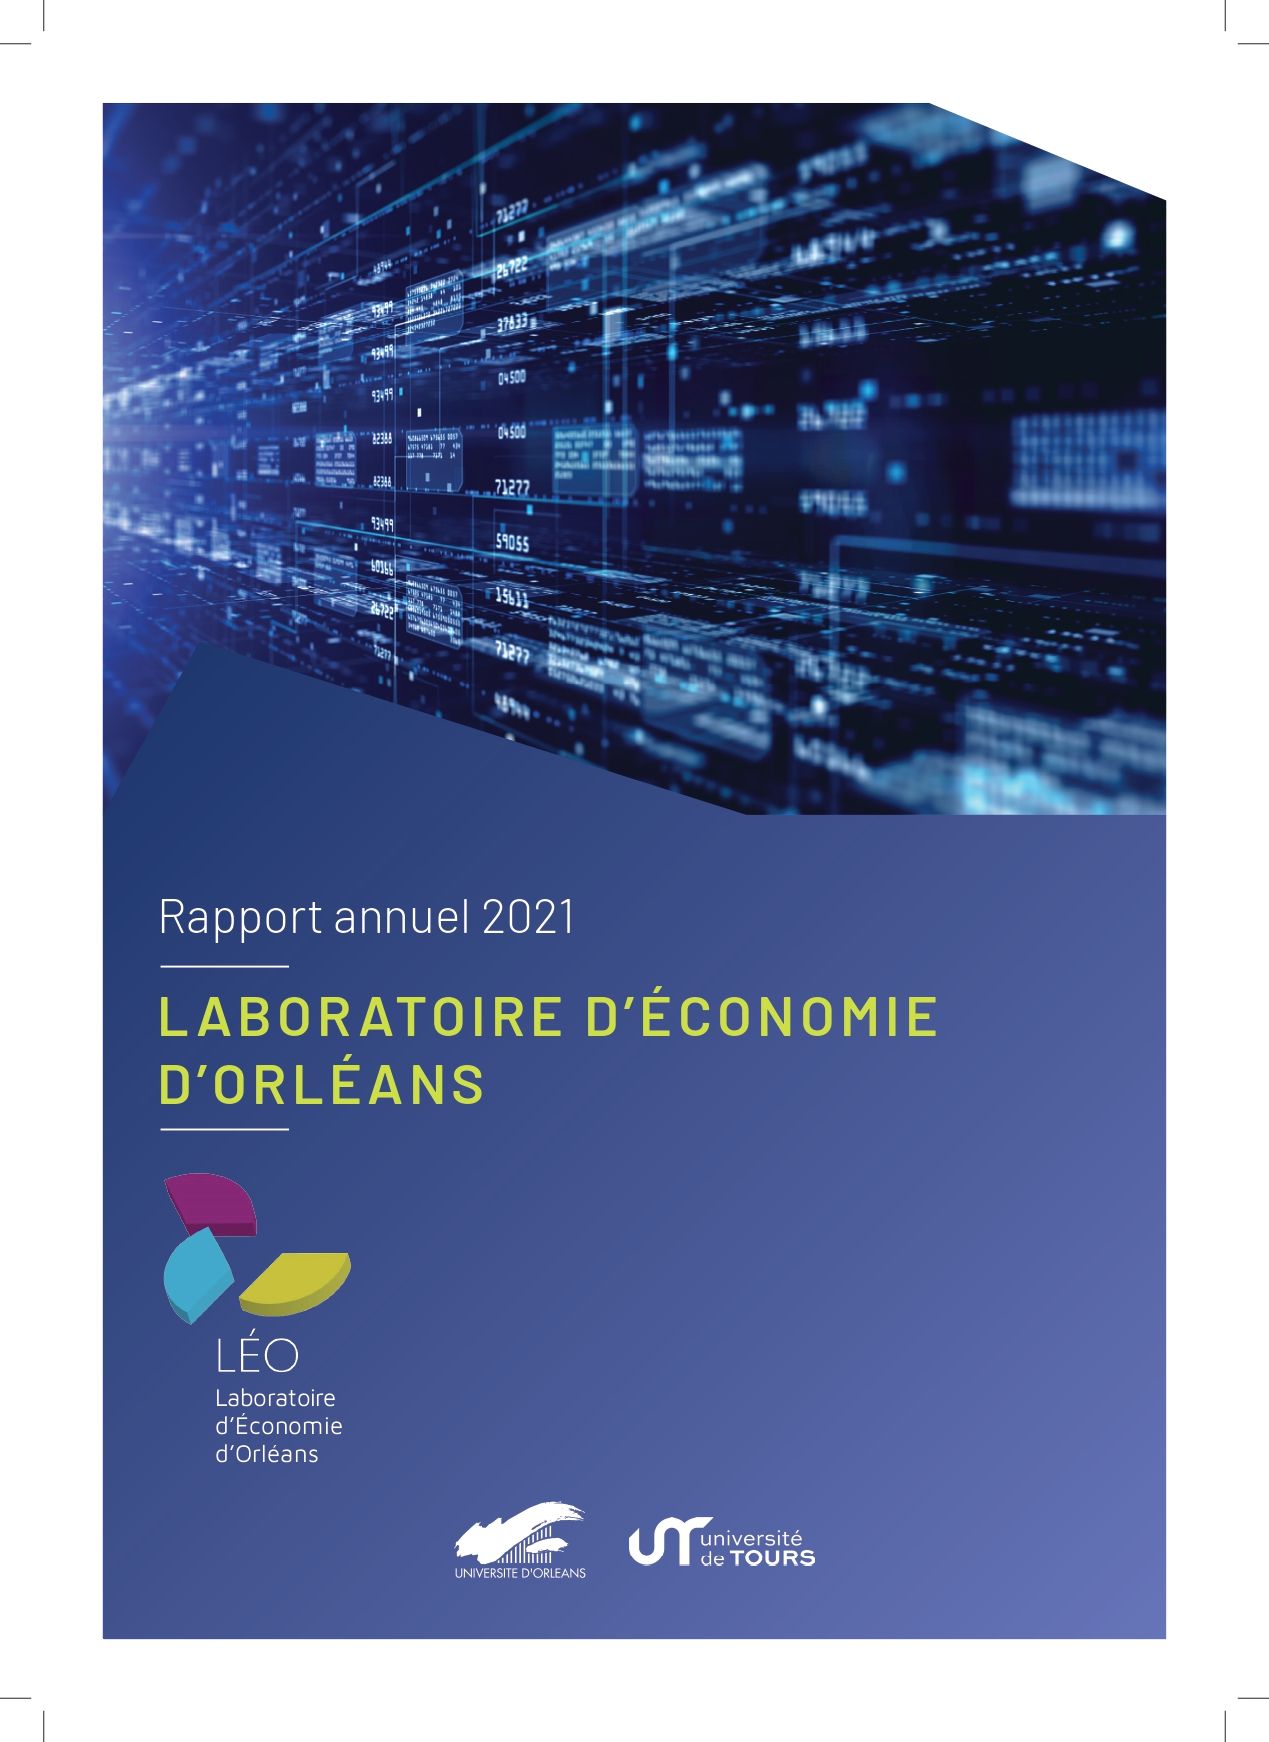 LEO - Rapport activité 2021